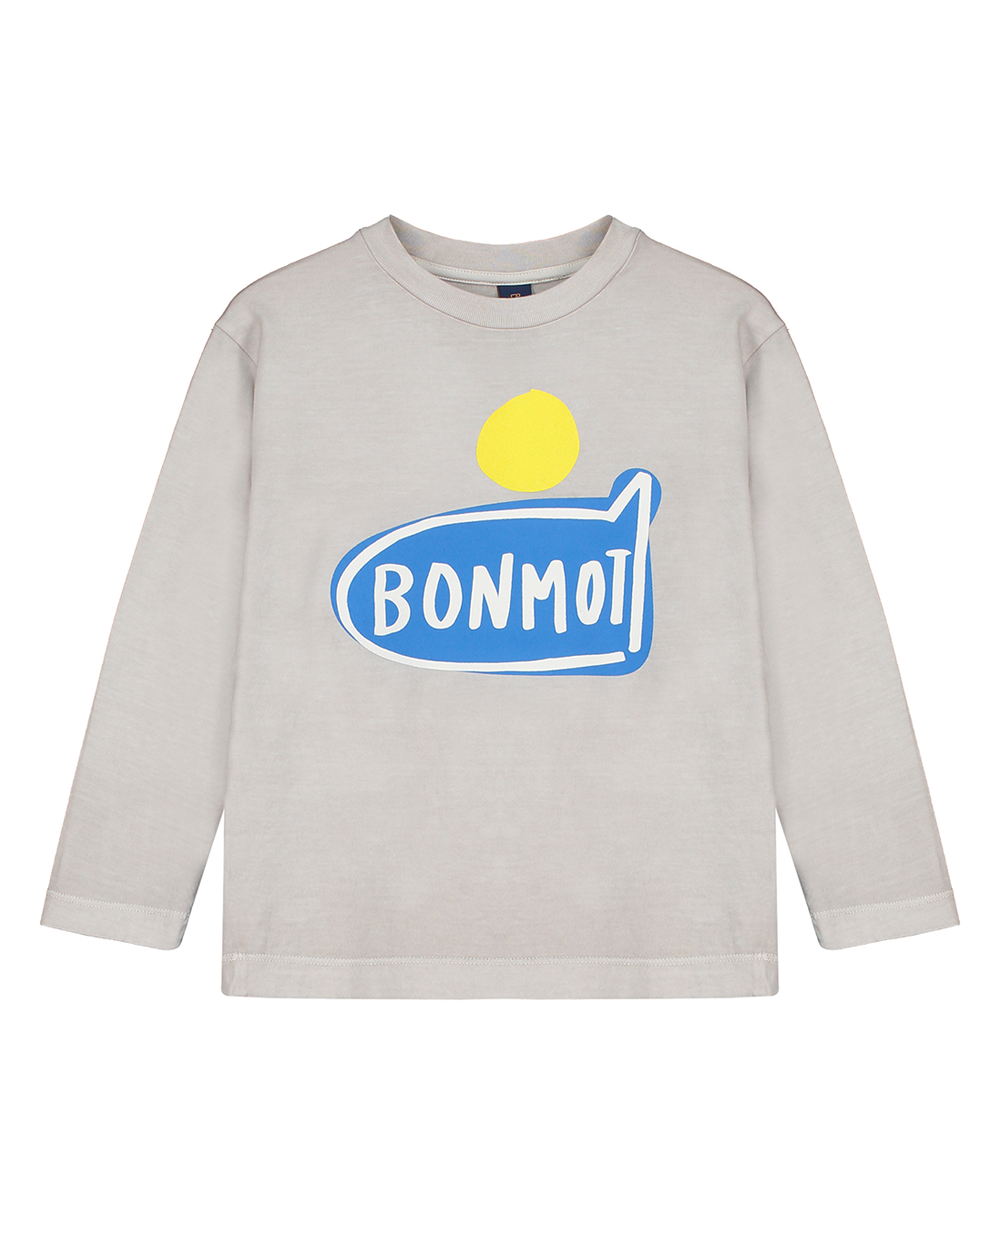 [BONMOT] T-shirt bonmot plane grey [4-5Y]